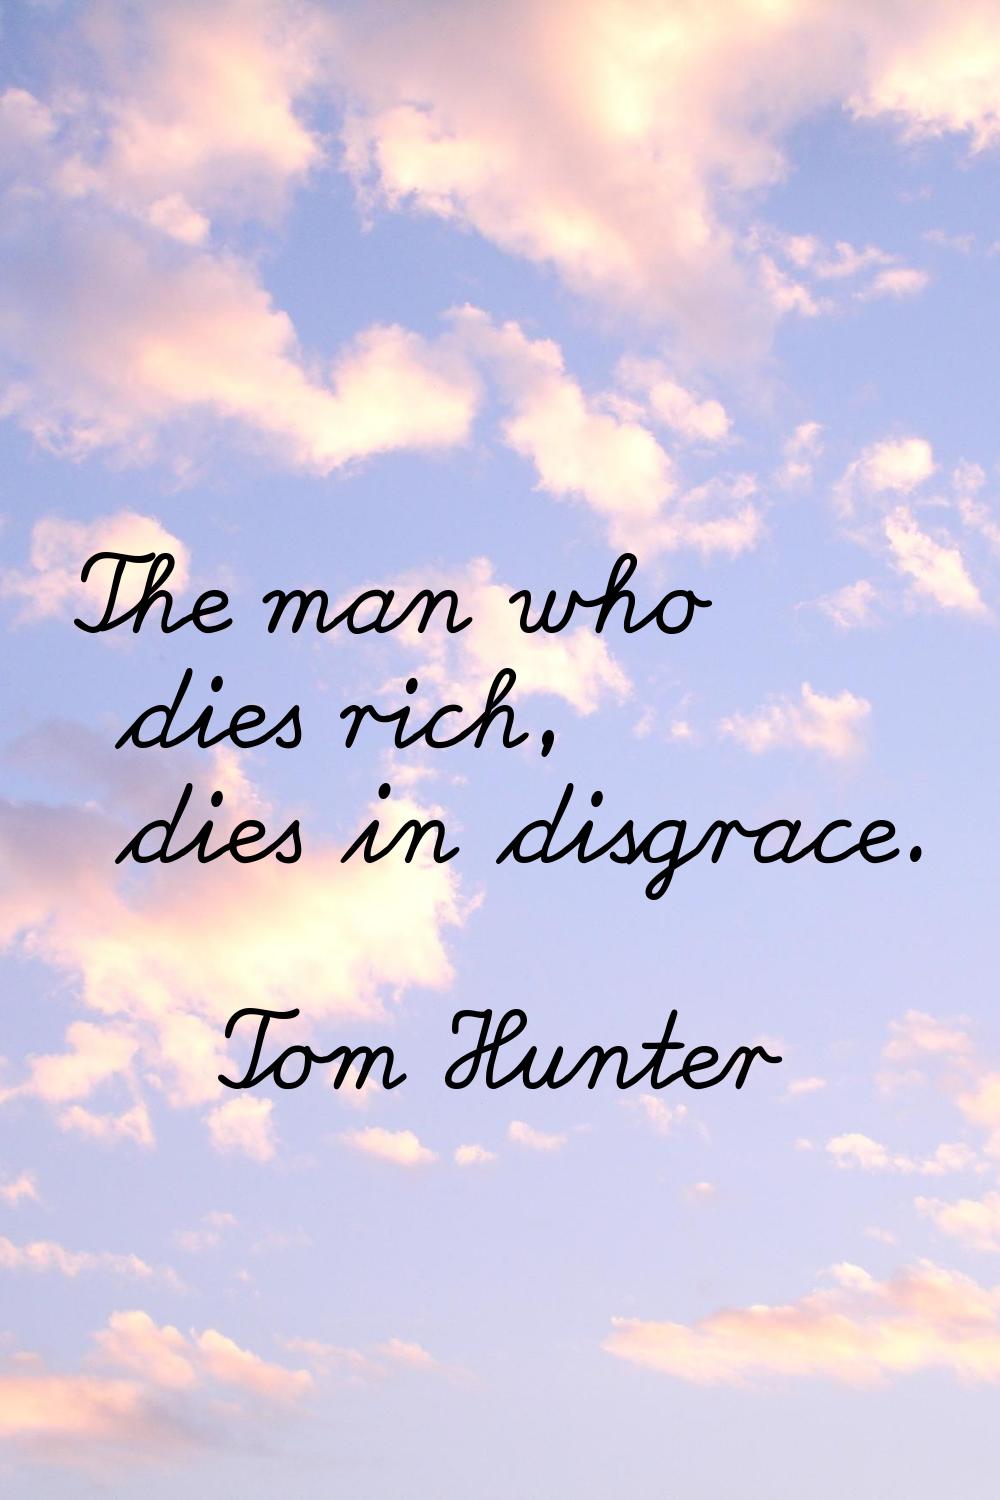 The man who dies rich, dies in disgrace.